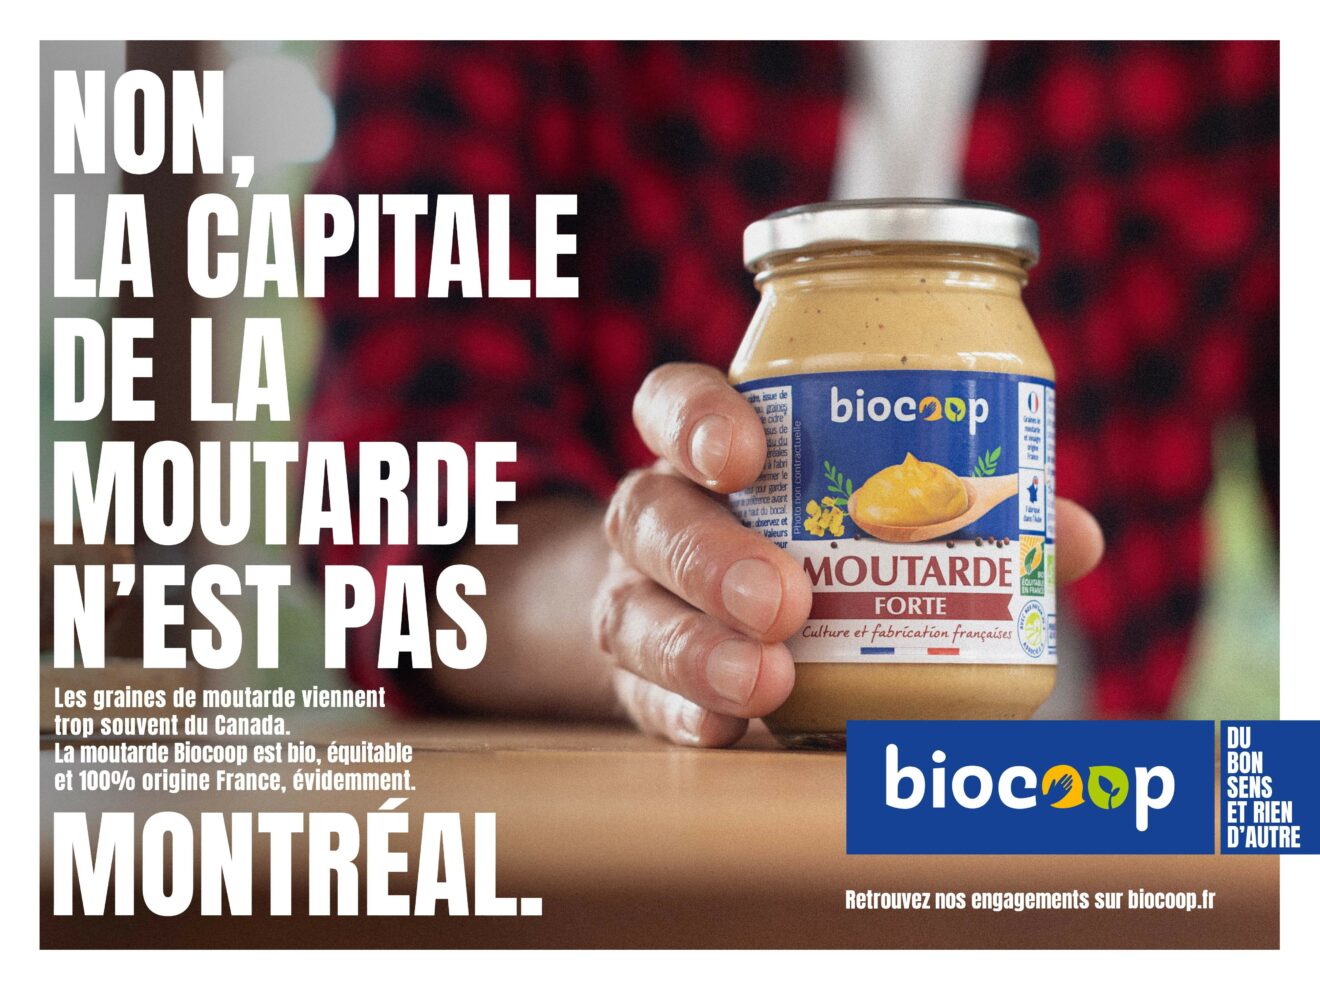 L'origine France au cœur de la nouvelle campagne Biocoop